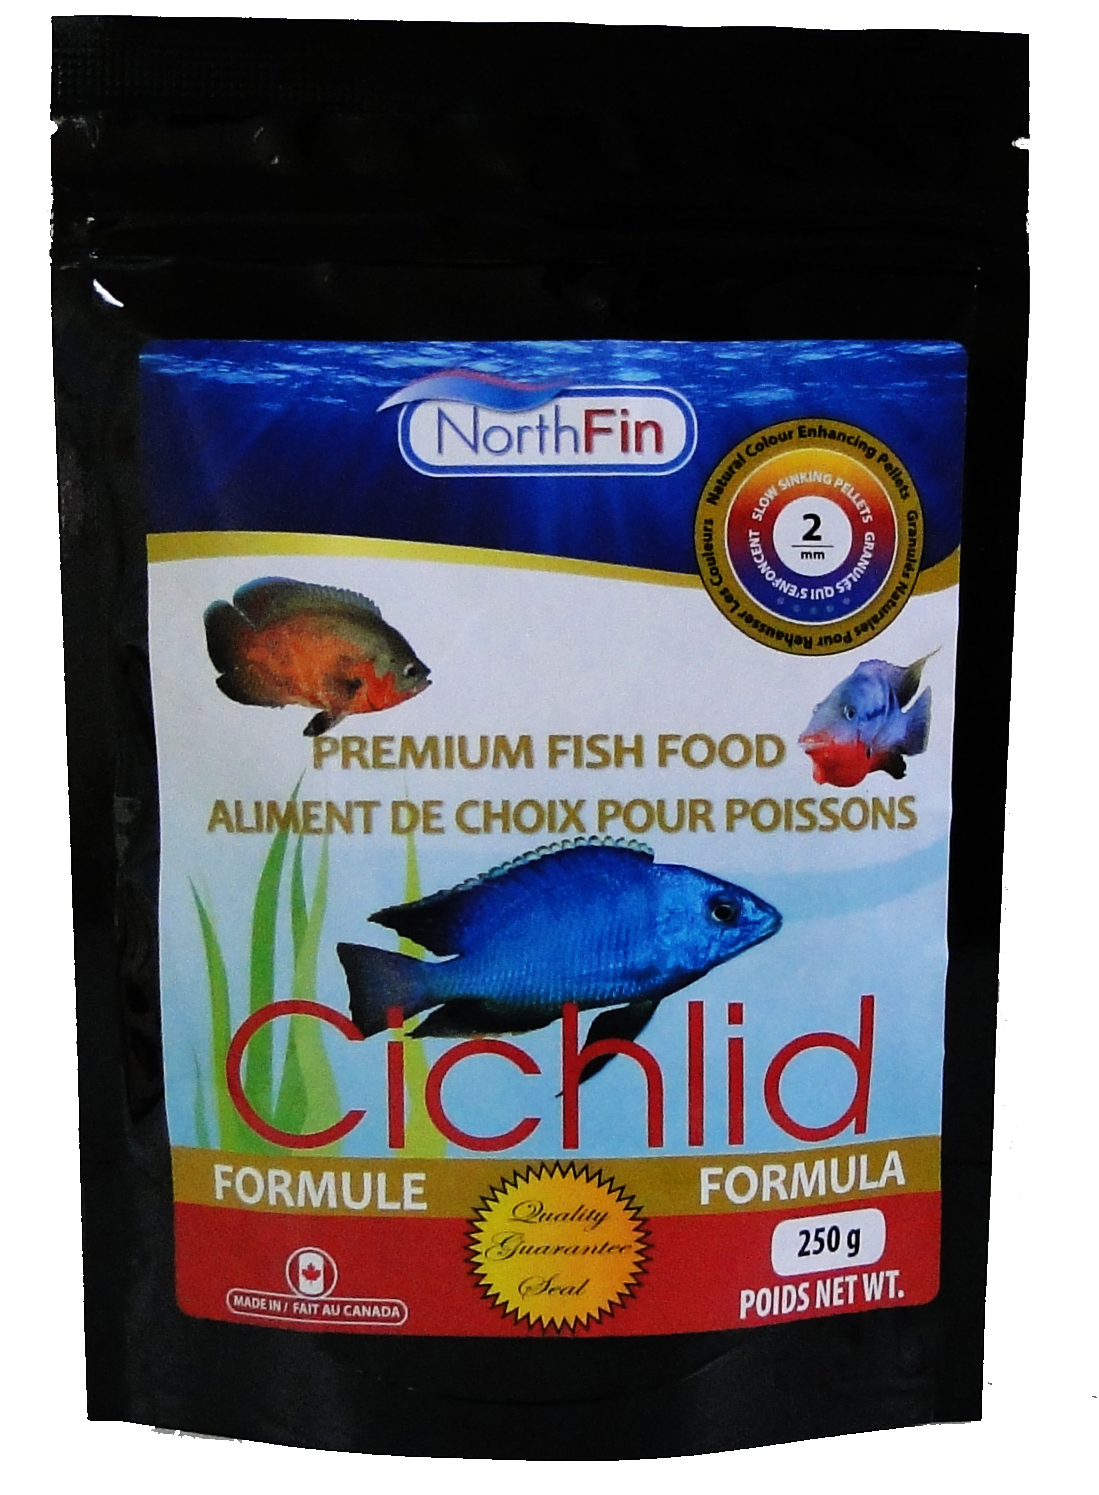 NorthFin Cichlid Formula 2mm